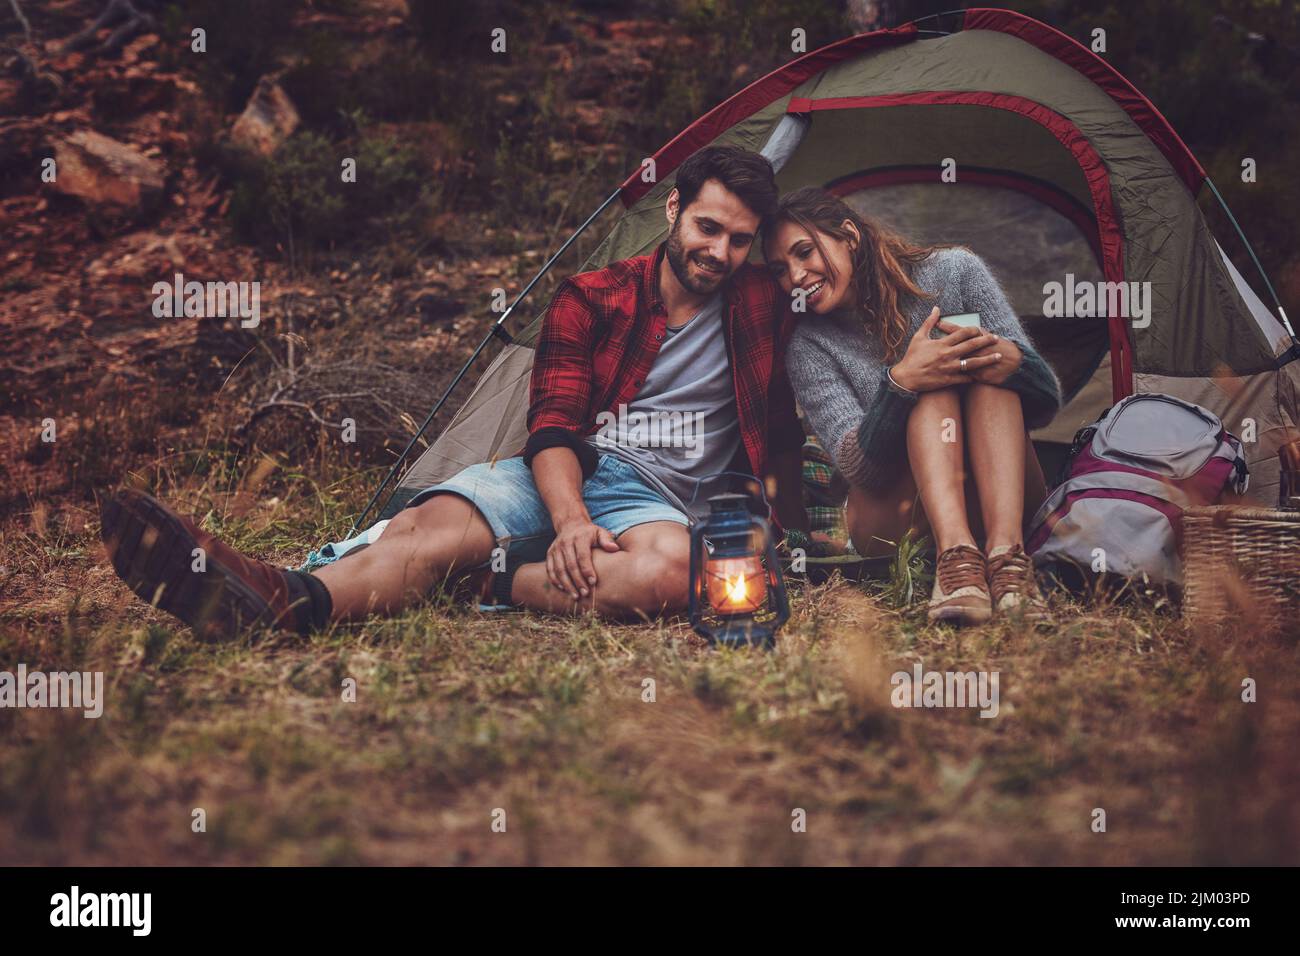 Glückliches junges Paar, das am Abend in der Nähe eines Campingzelts sitzt. Junges Paar genießt einen Campingurlaub zusammen. Stockfoto